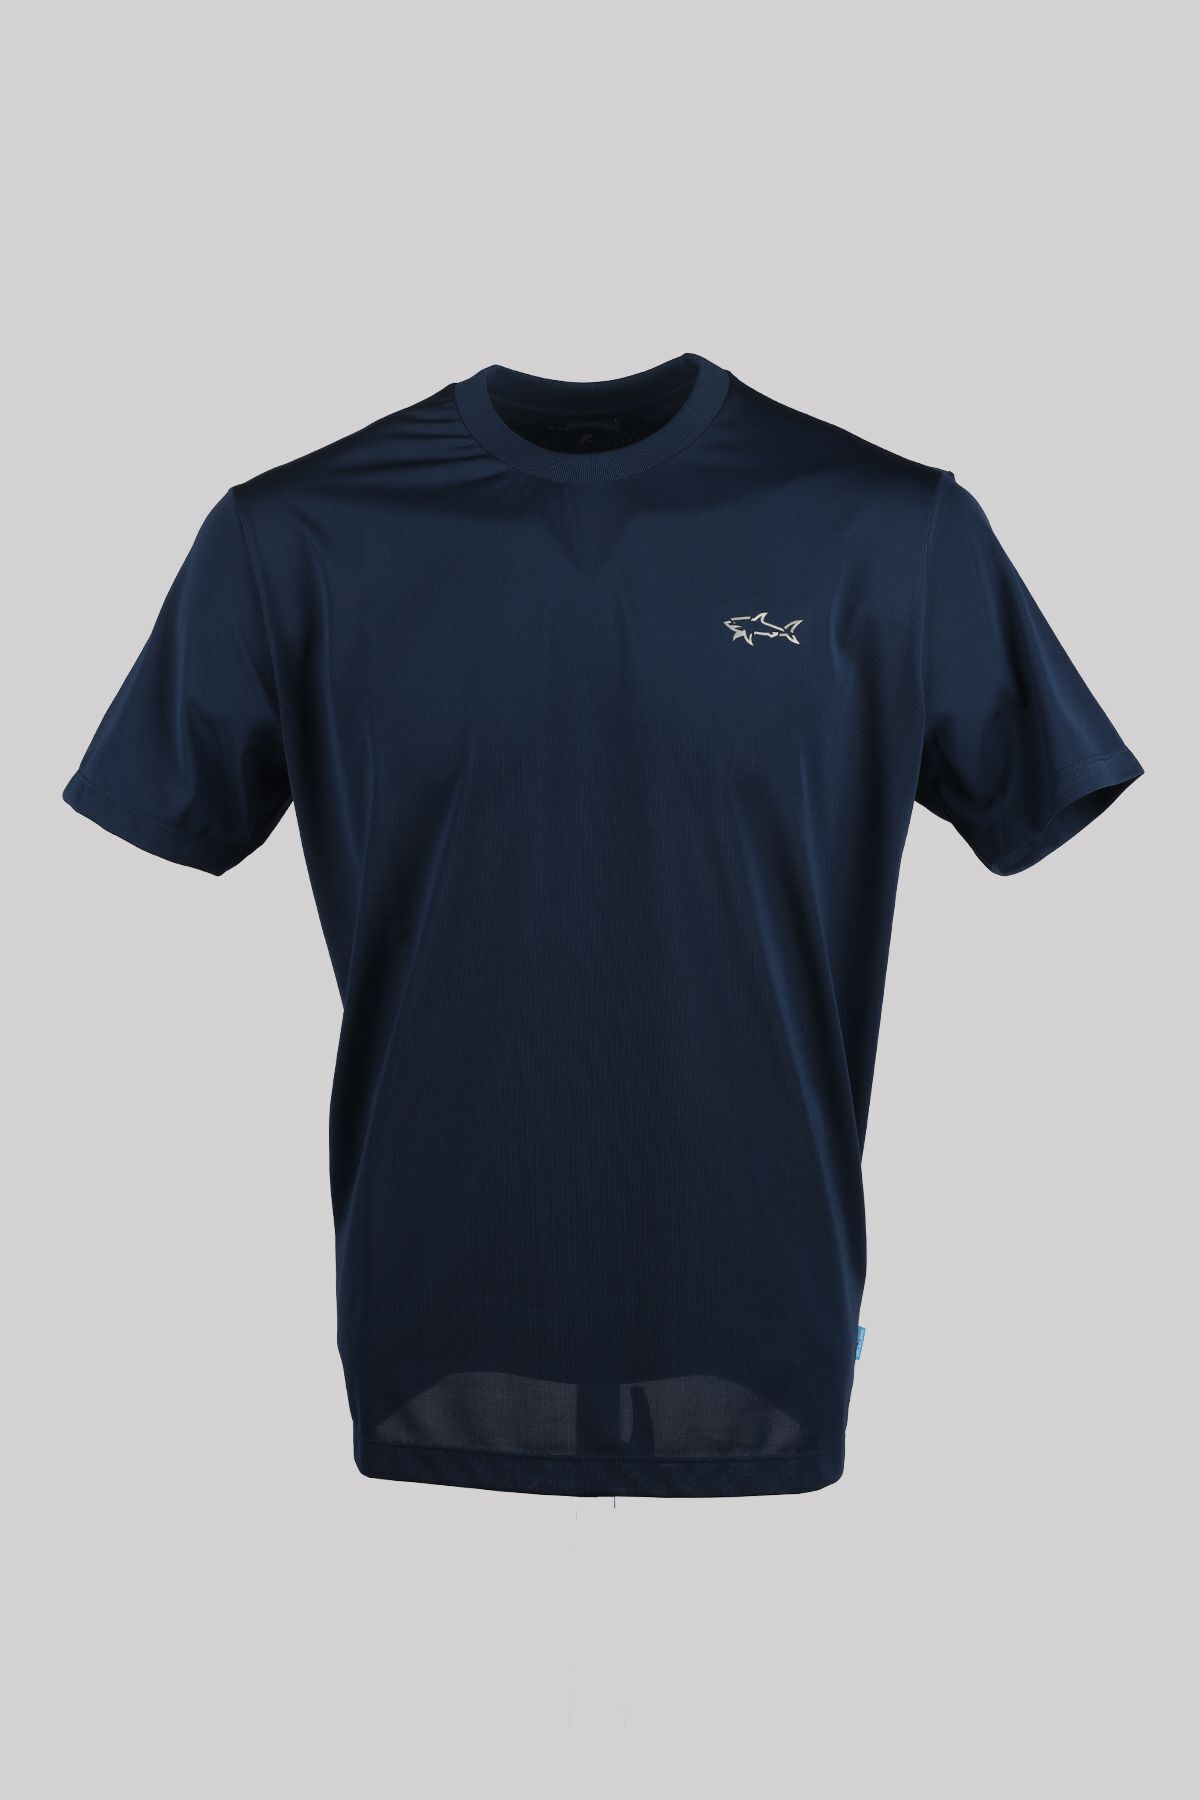 Paul&Shark Erkek Marka Logolu Kısa Kol Yuvarlak Yaka Lacivert T-Shirt 24411095-013